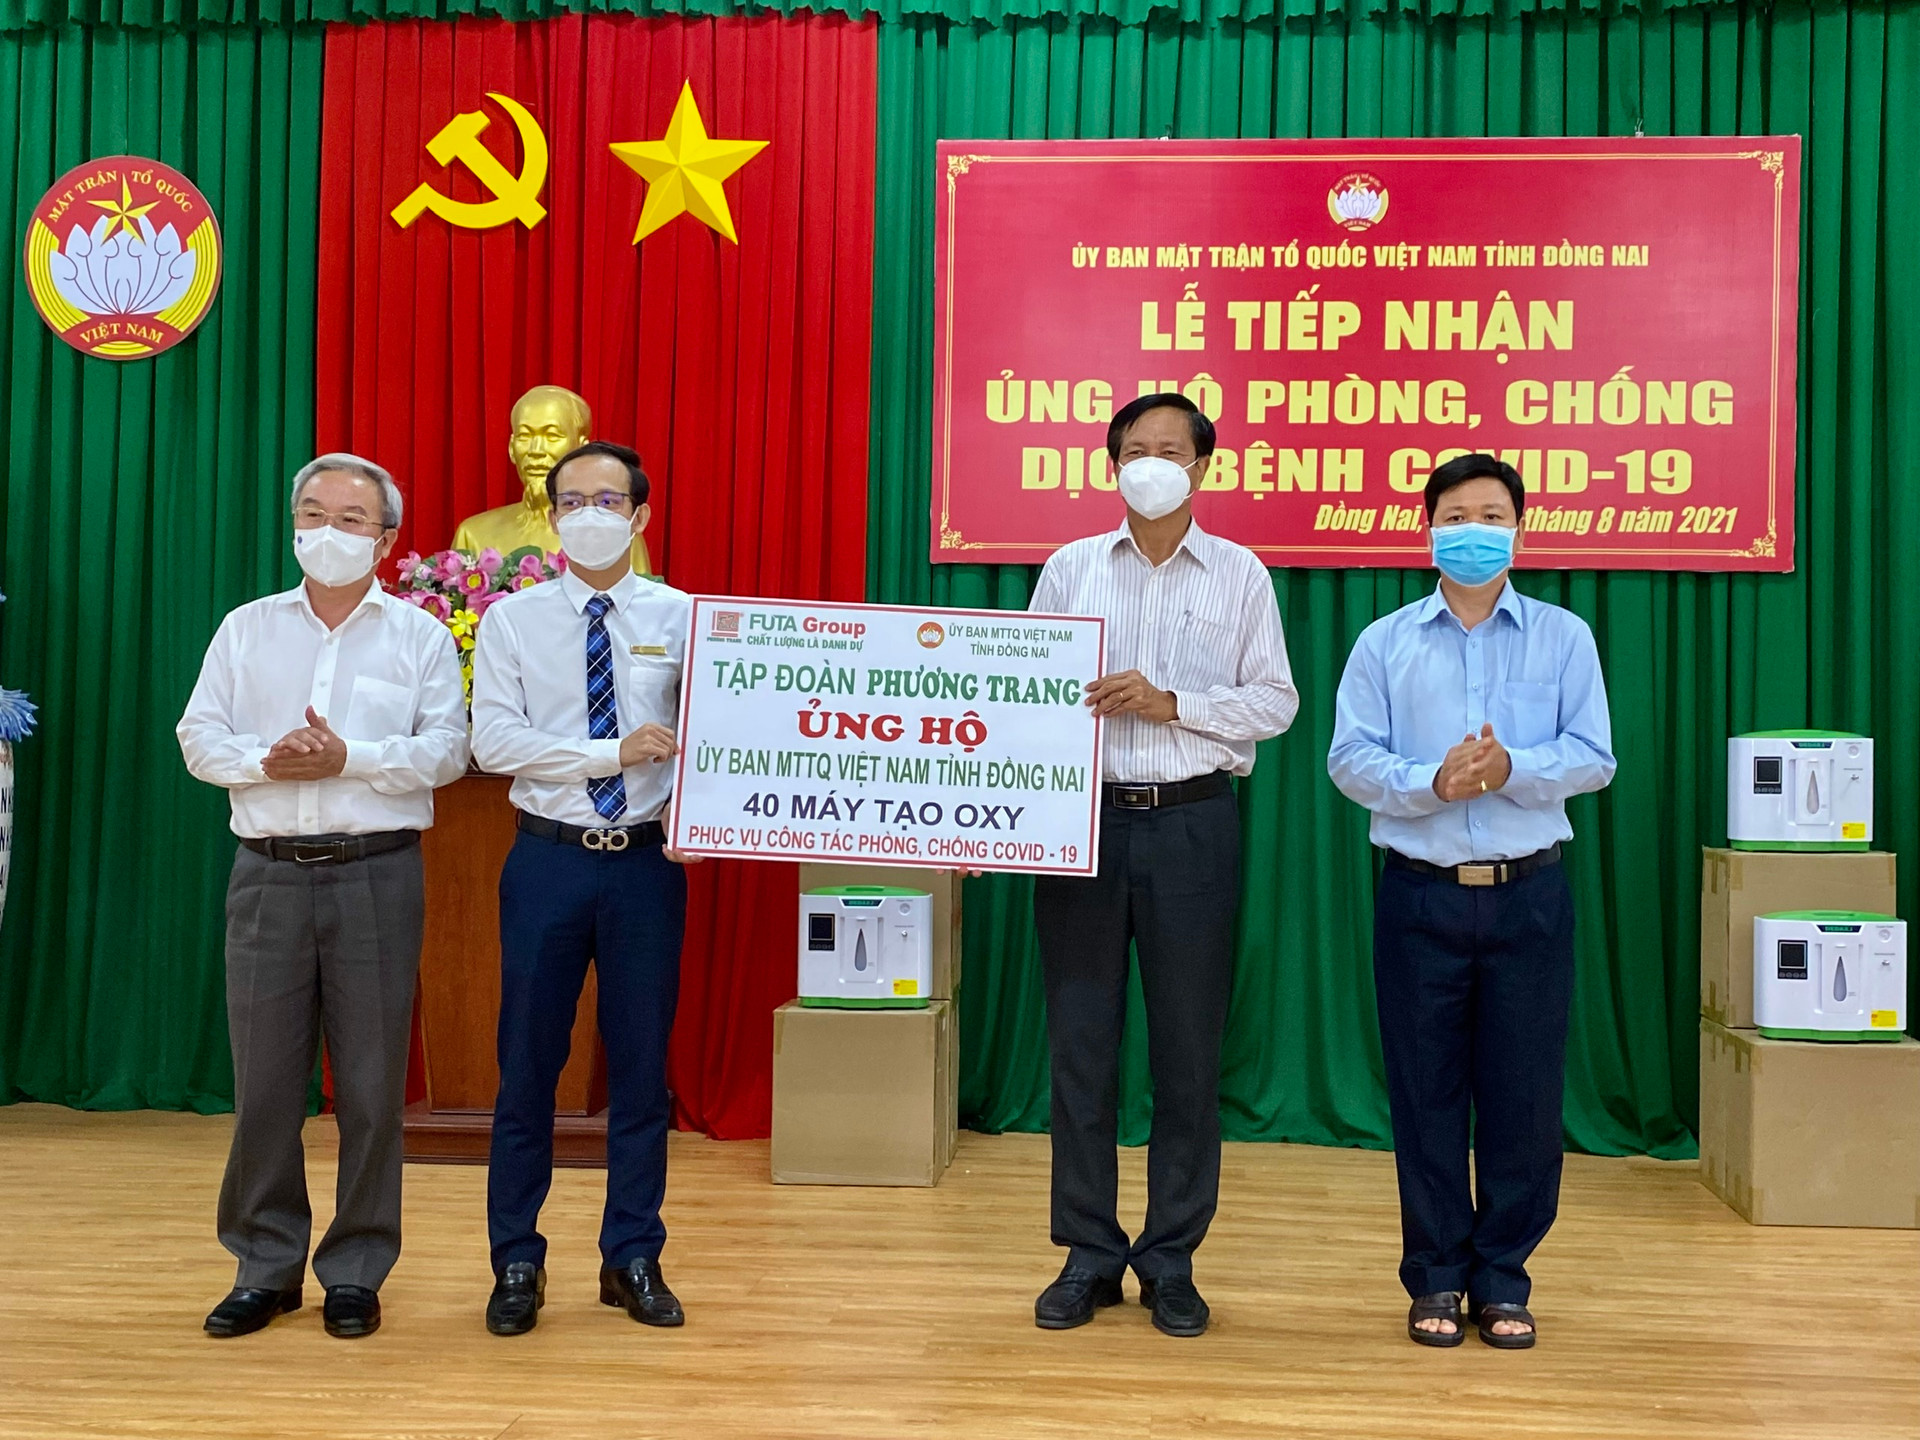 Đại diện Uỷ ban MTTQ Việt Nam tỉnh Đồng Nai tiếp nhận ủng hộ từ các doanh nghiệp.